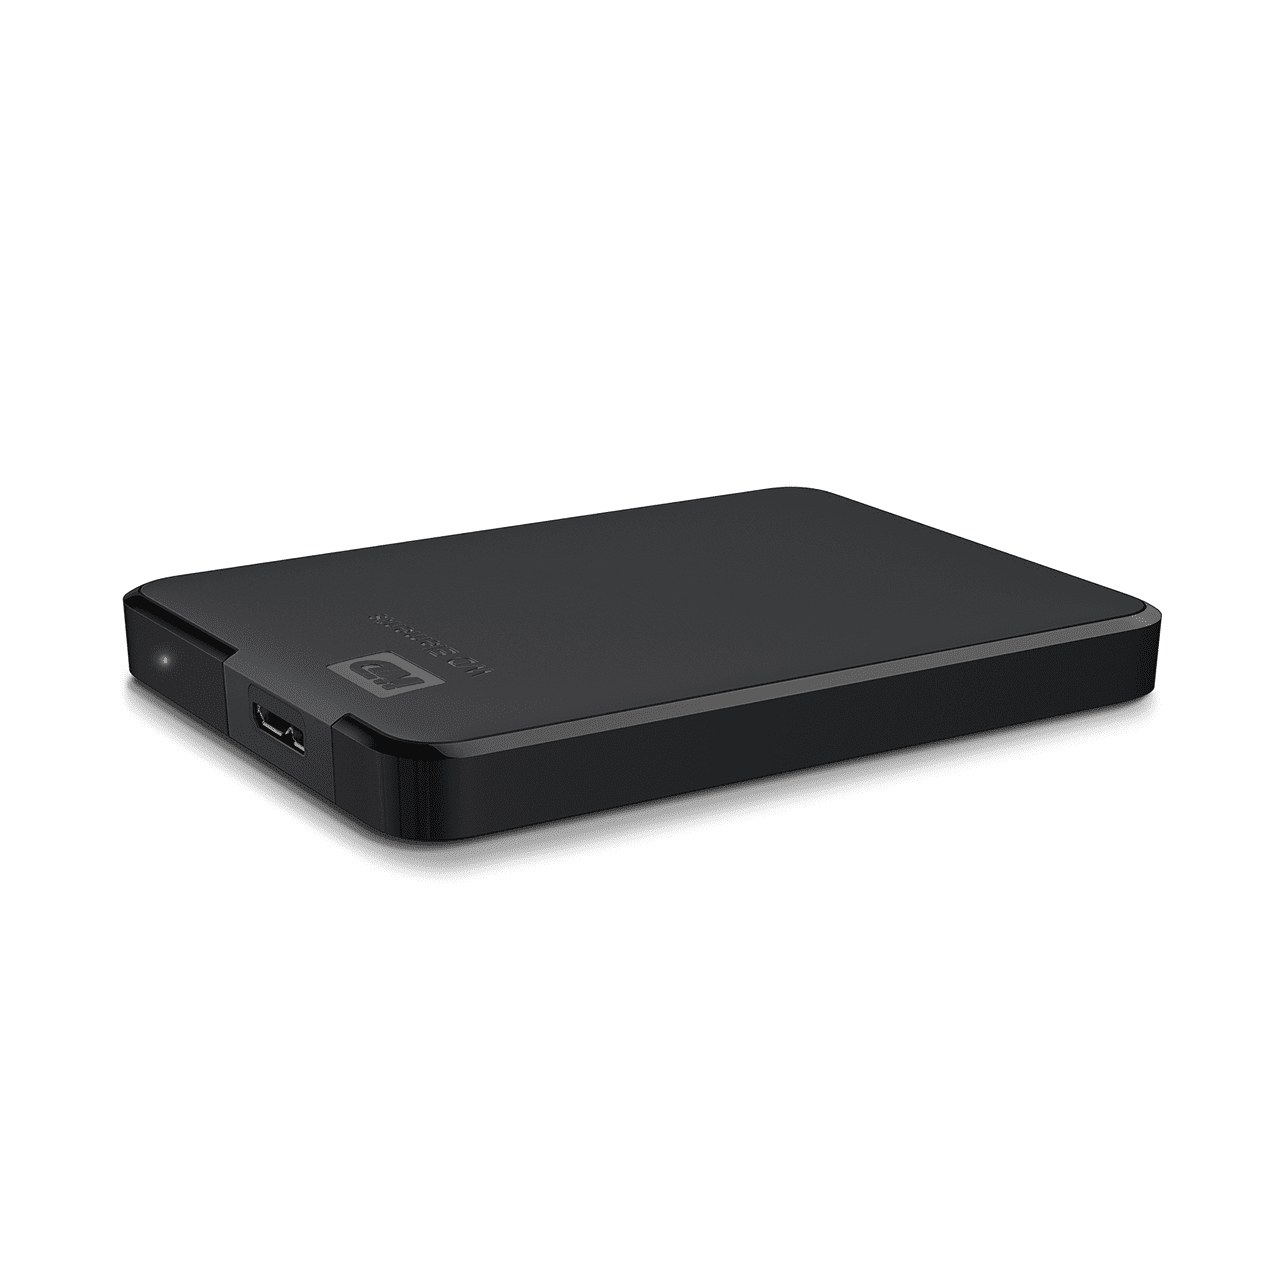 WD Elements 5TB HDD USB3.0 Portable 2.5inch RTL extern black